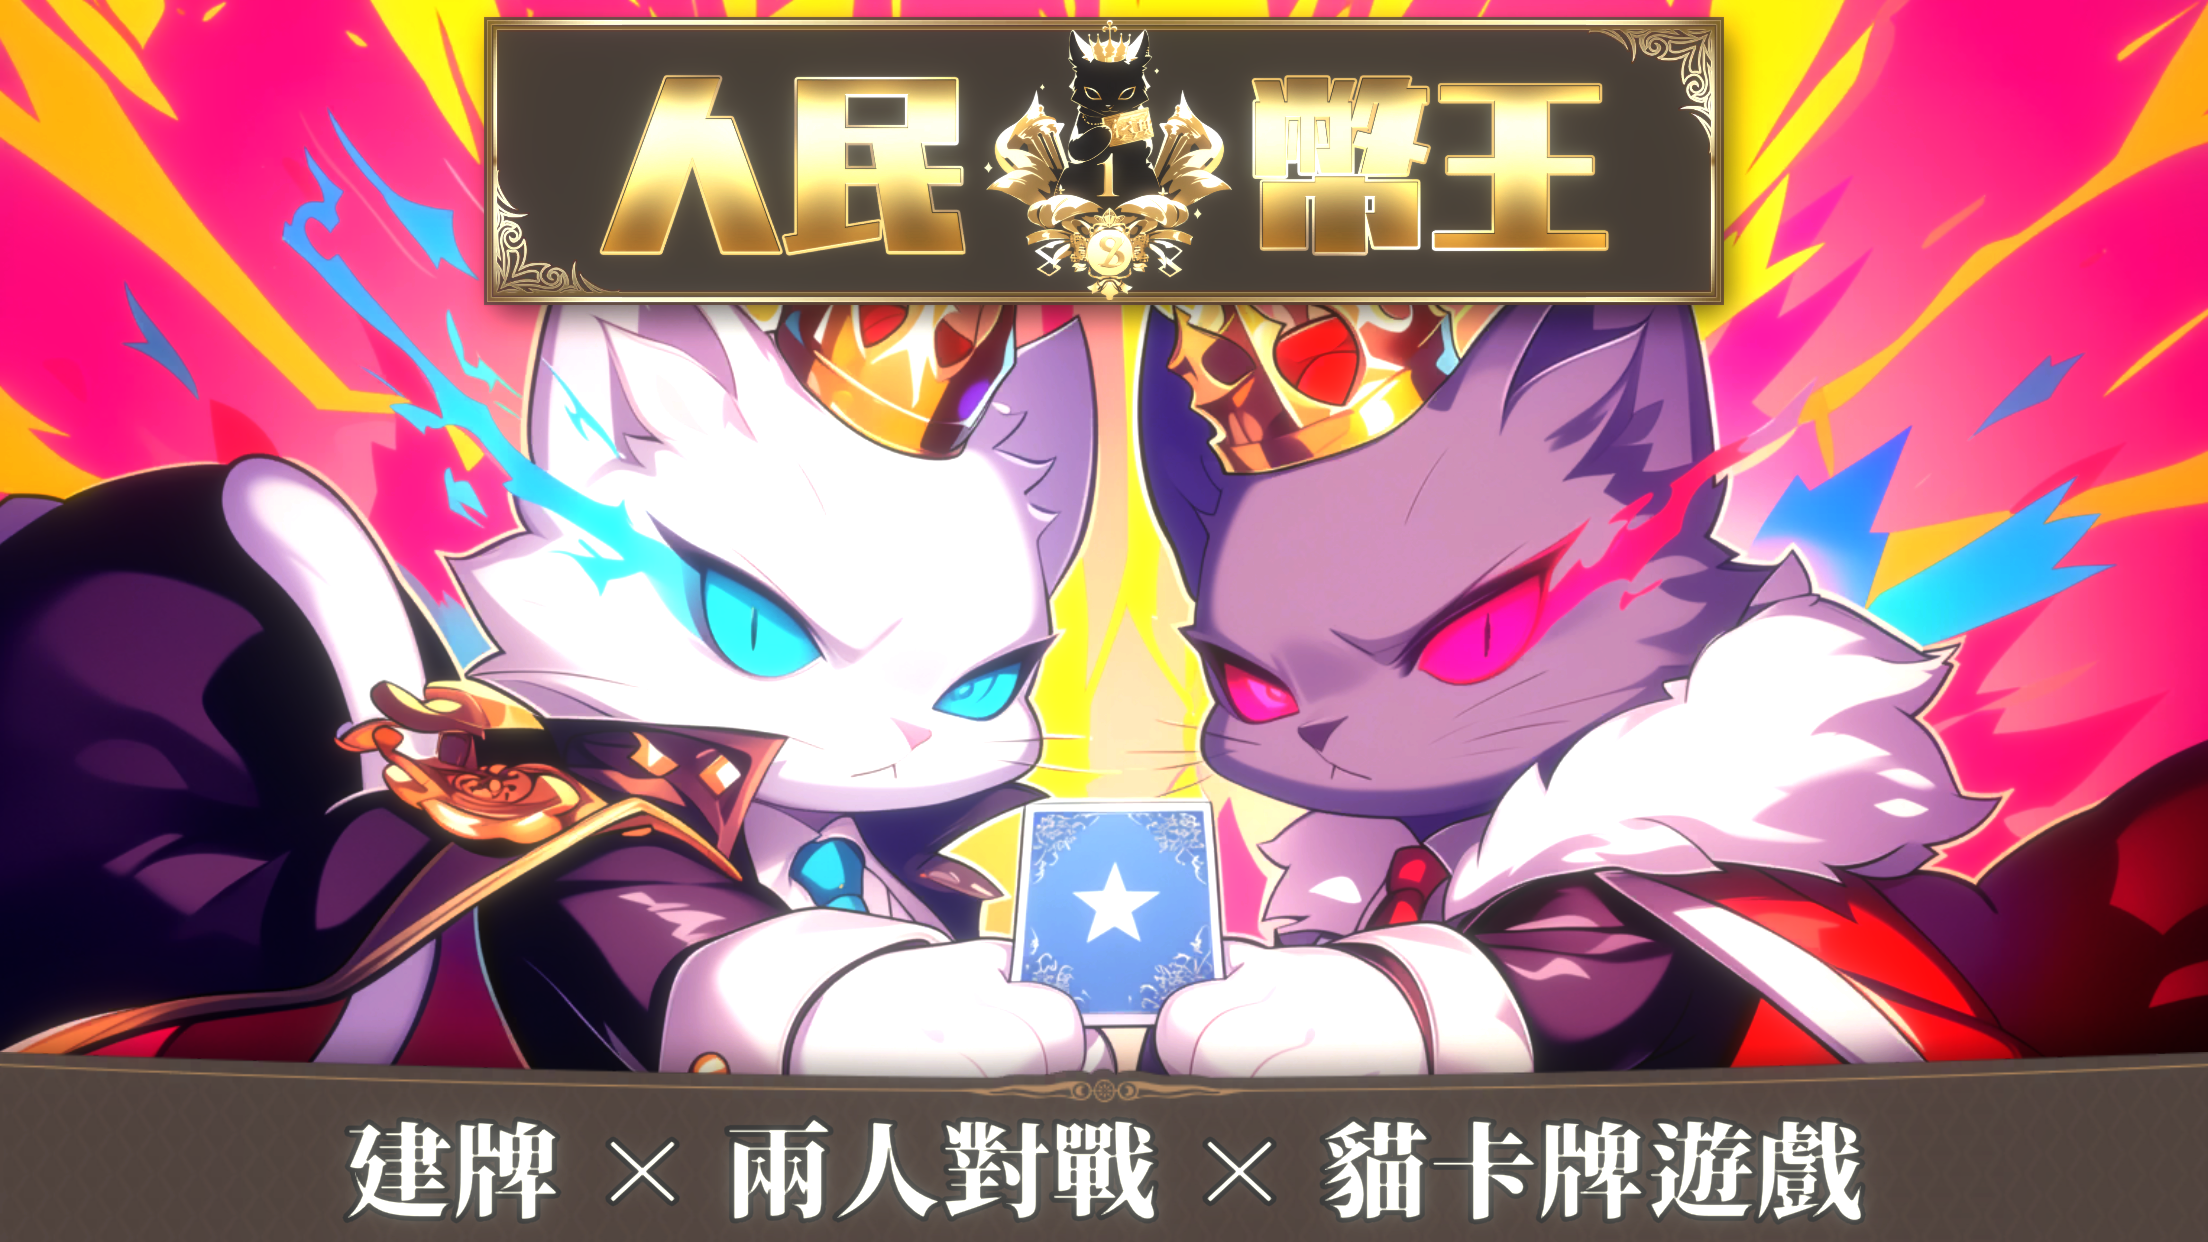 人民幣王:全面策略性貓咪卡牌線上深度對戰體驗完整遊戲遊戲截圖